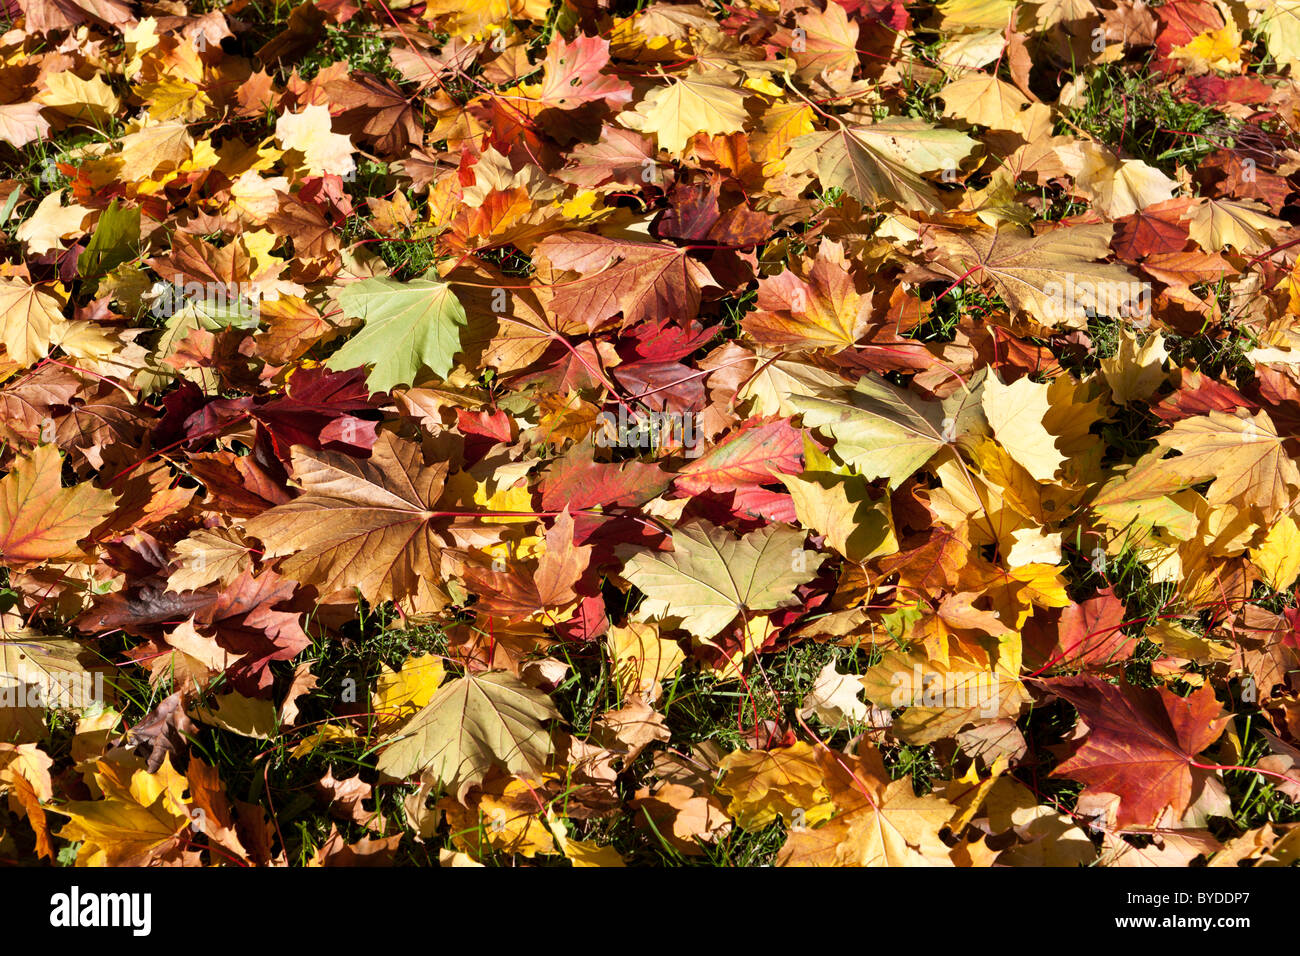 Colourful autumnal foliage Stock Photo